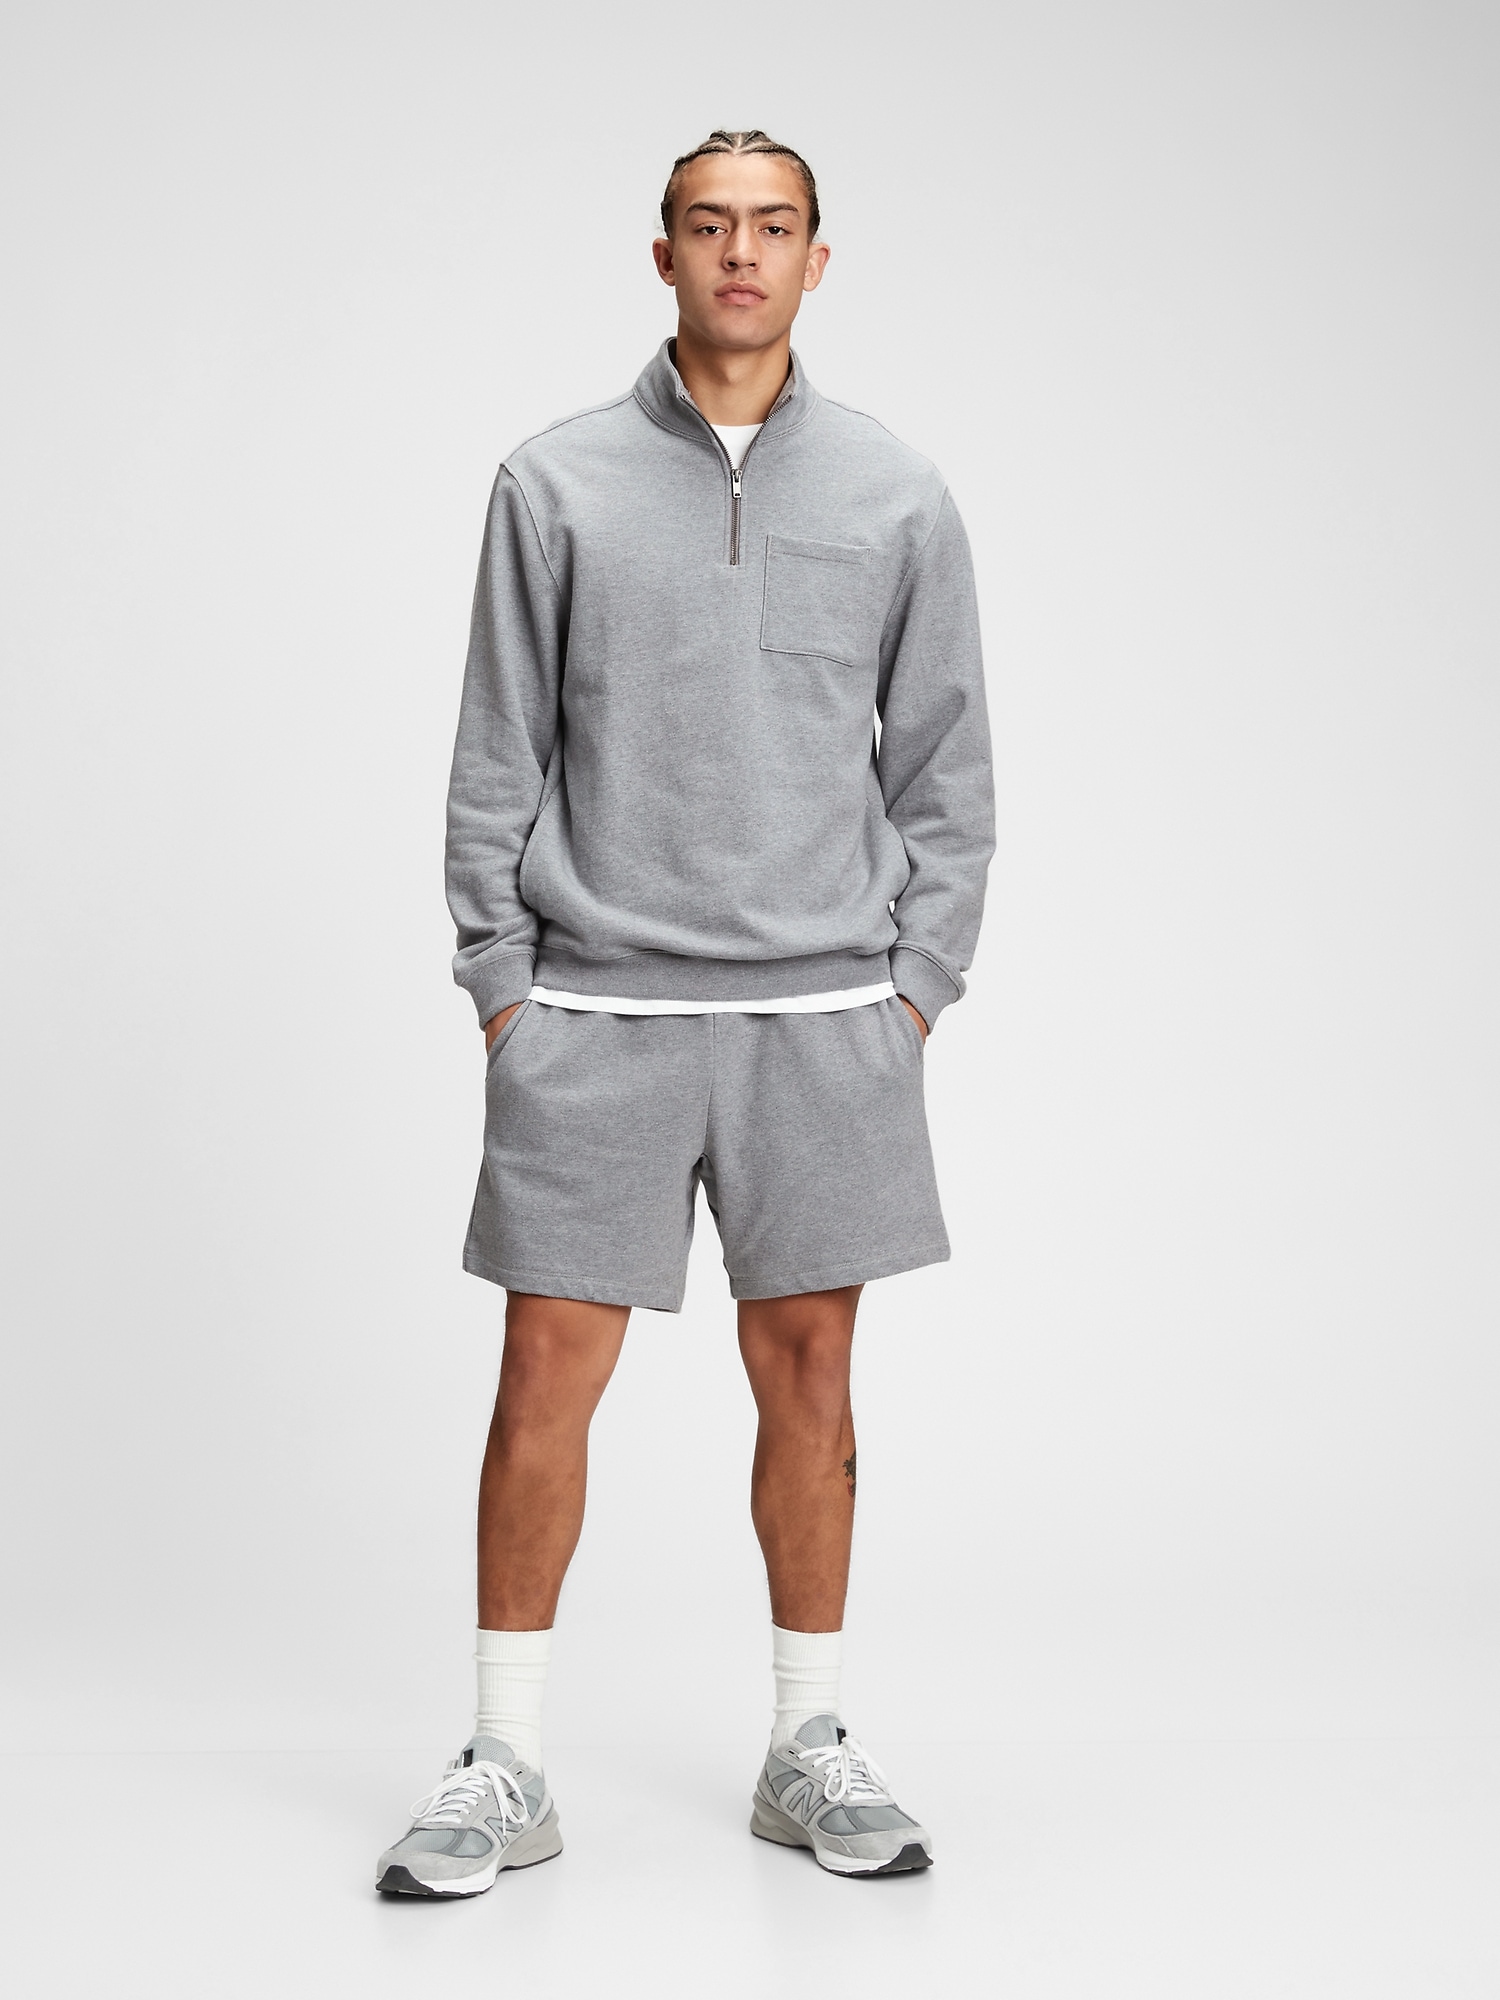 Half-Zip Sweatshirt | Gap